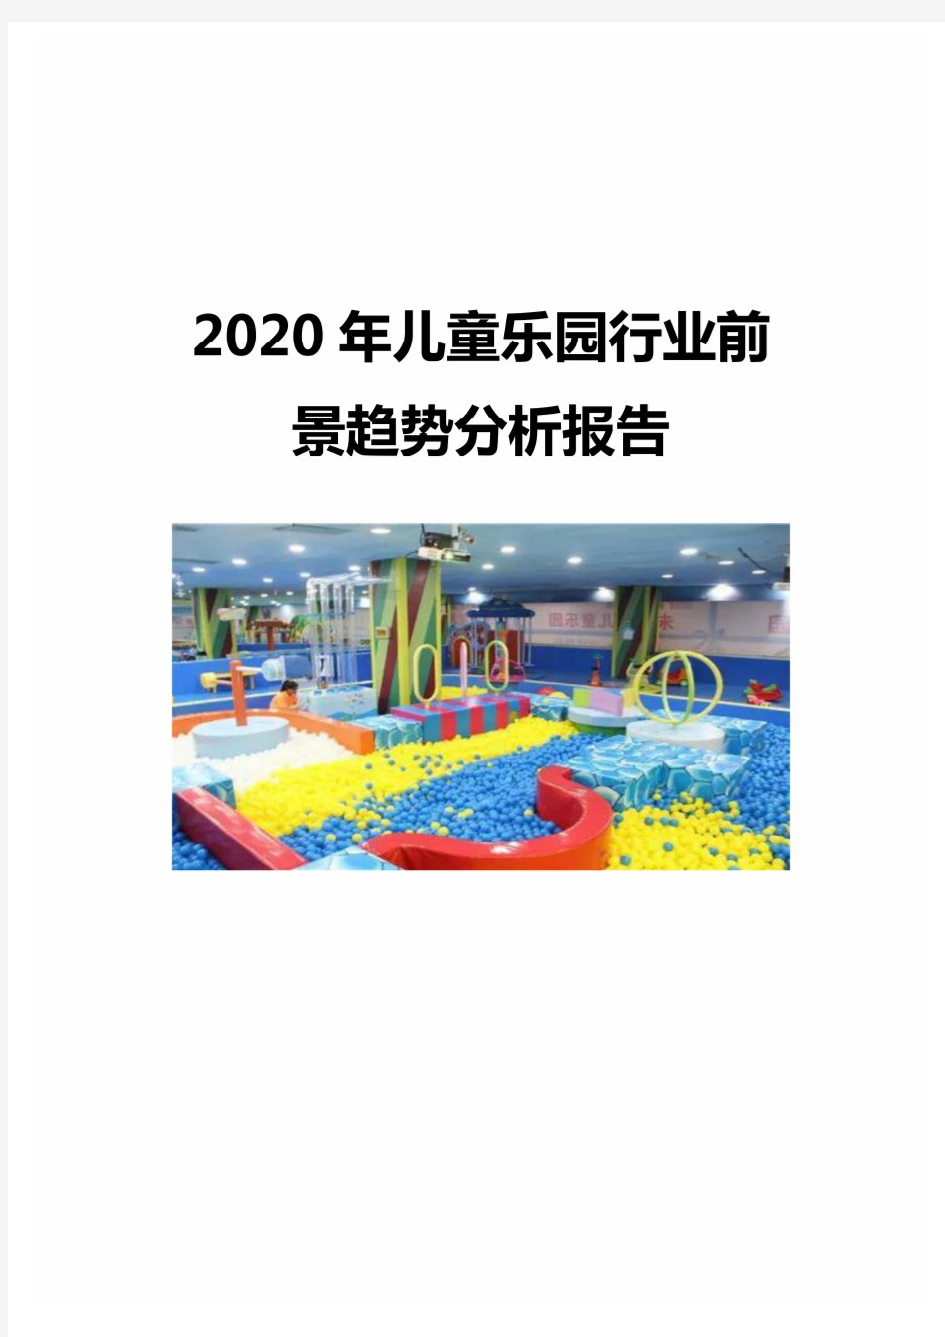 2020年儿童乐园行业前景趋势分析报告